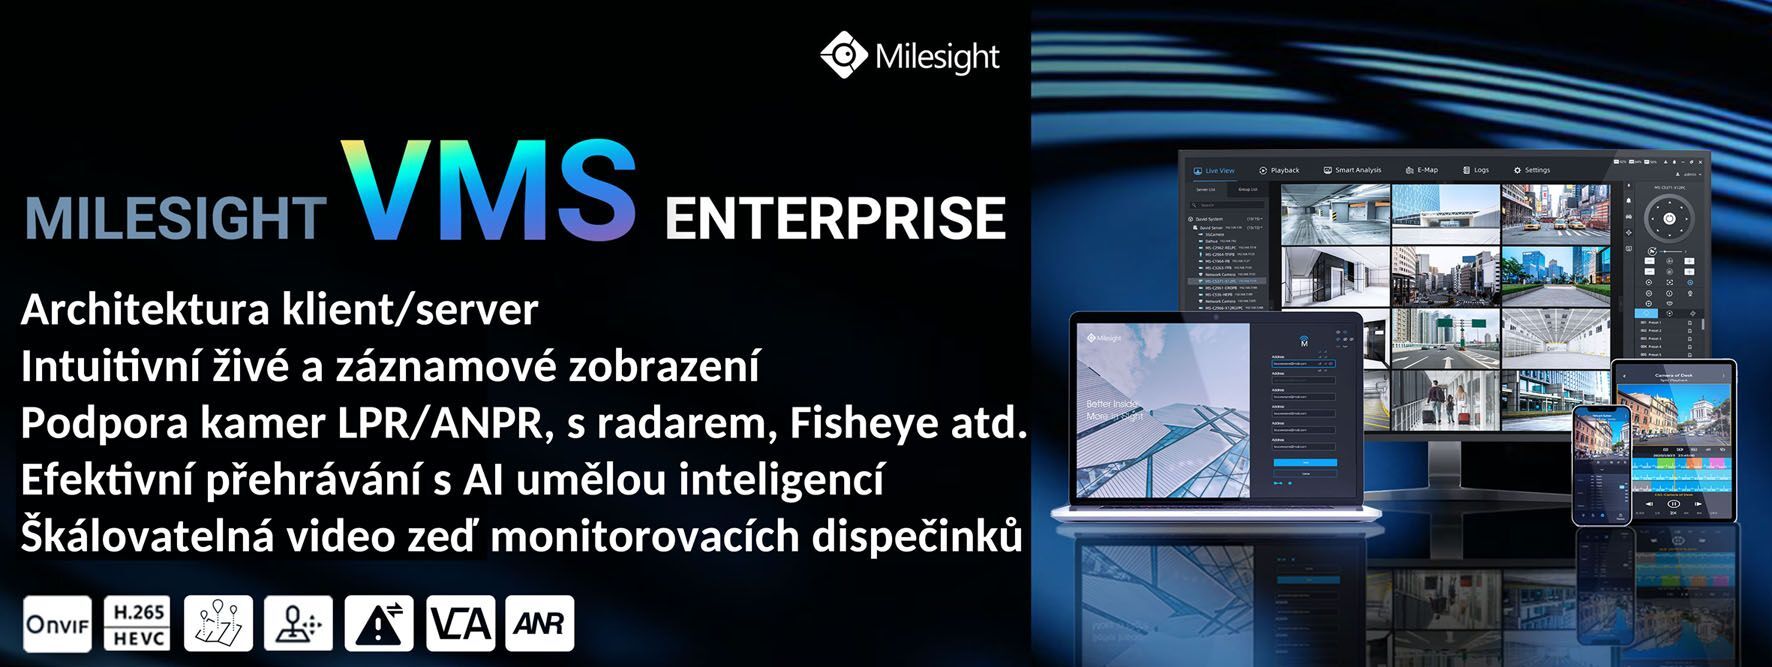 MS-MC-008 8CH Software VMS Enterprise